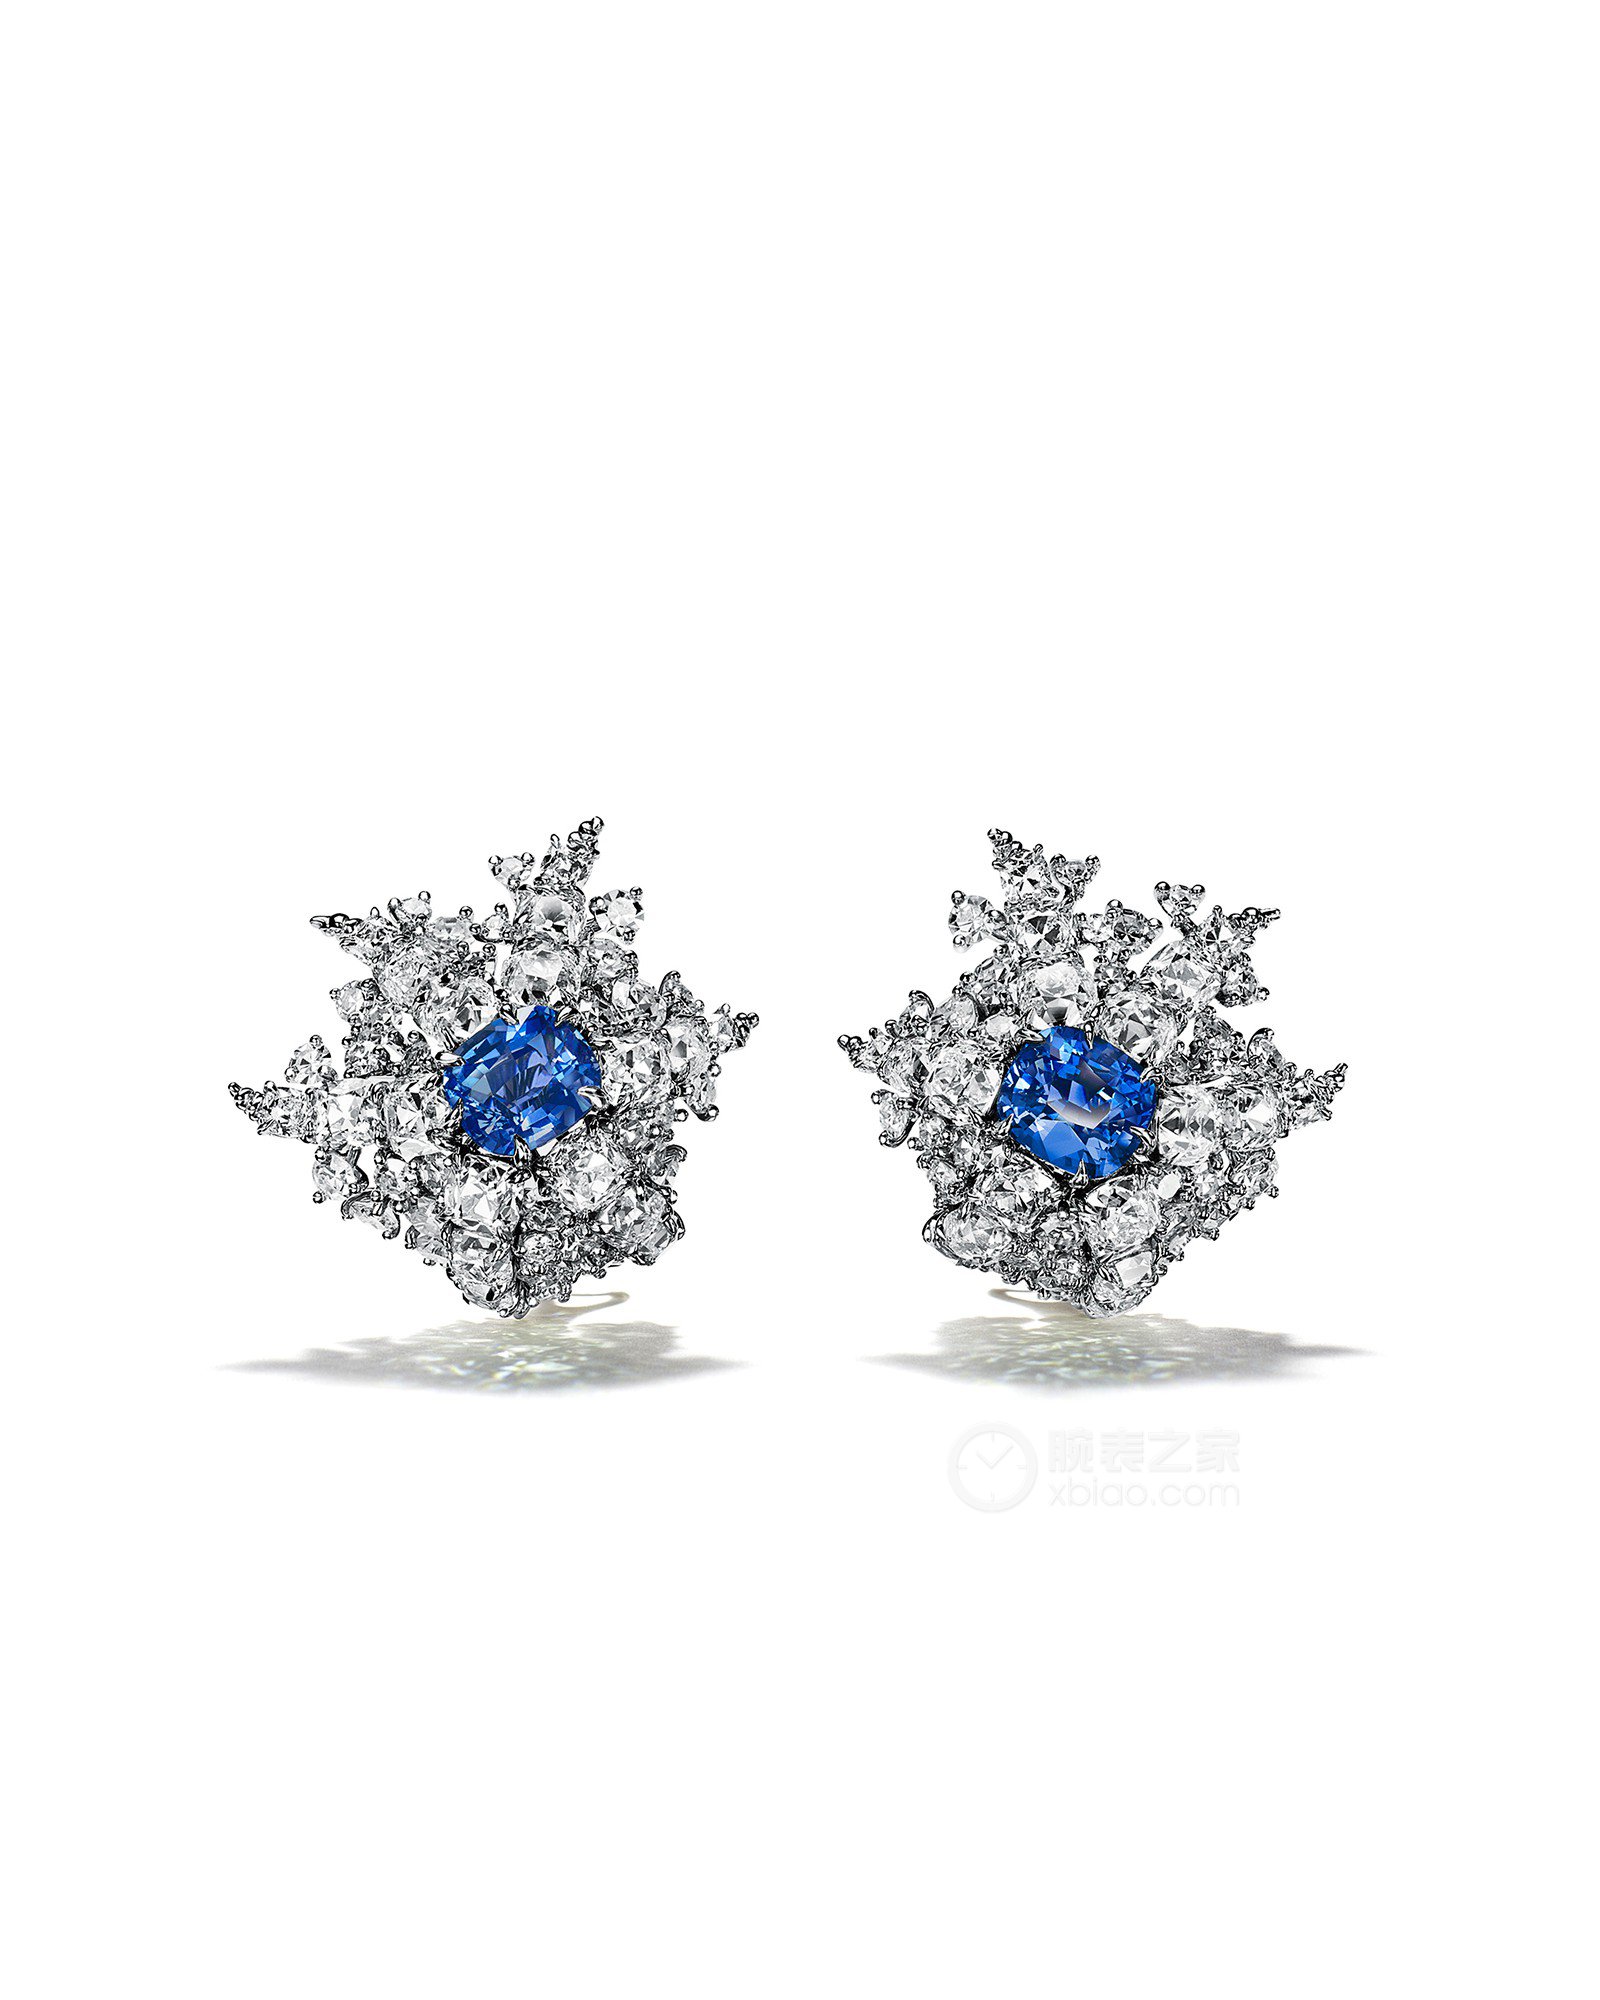 蒂芙尼BLUE BOOK高级珠宝铂金镶嵌钴蓝色尖晶石及钻石耳环耳饰